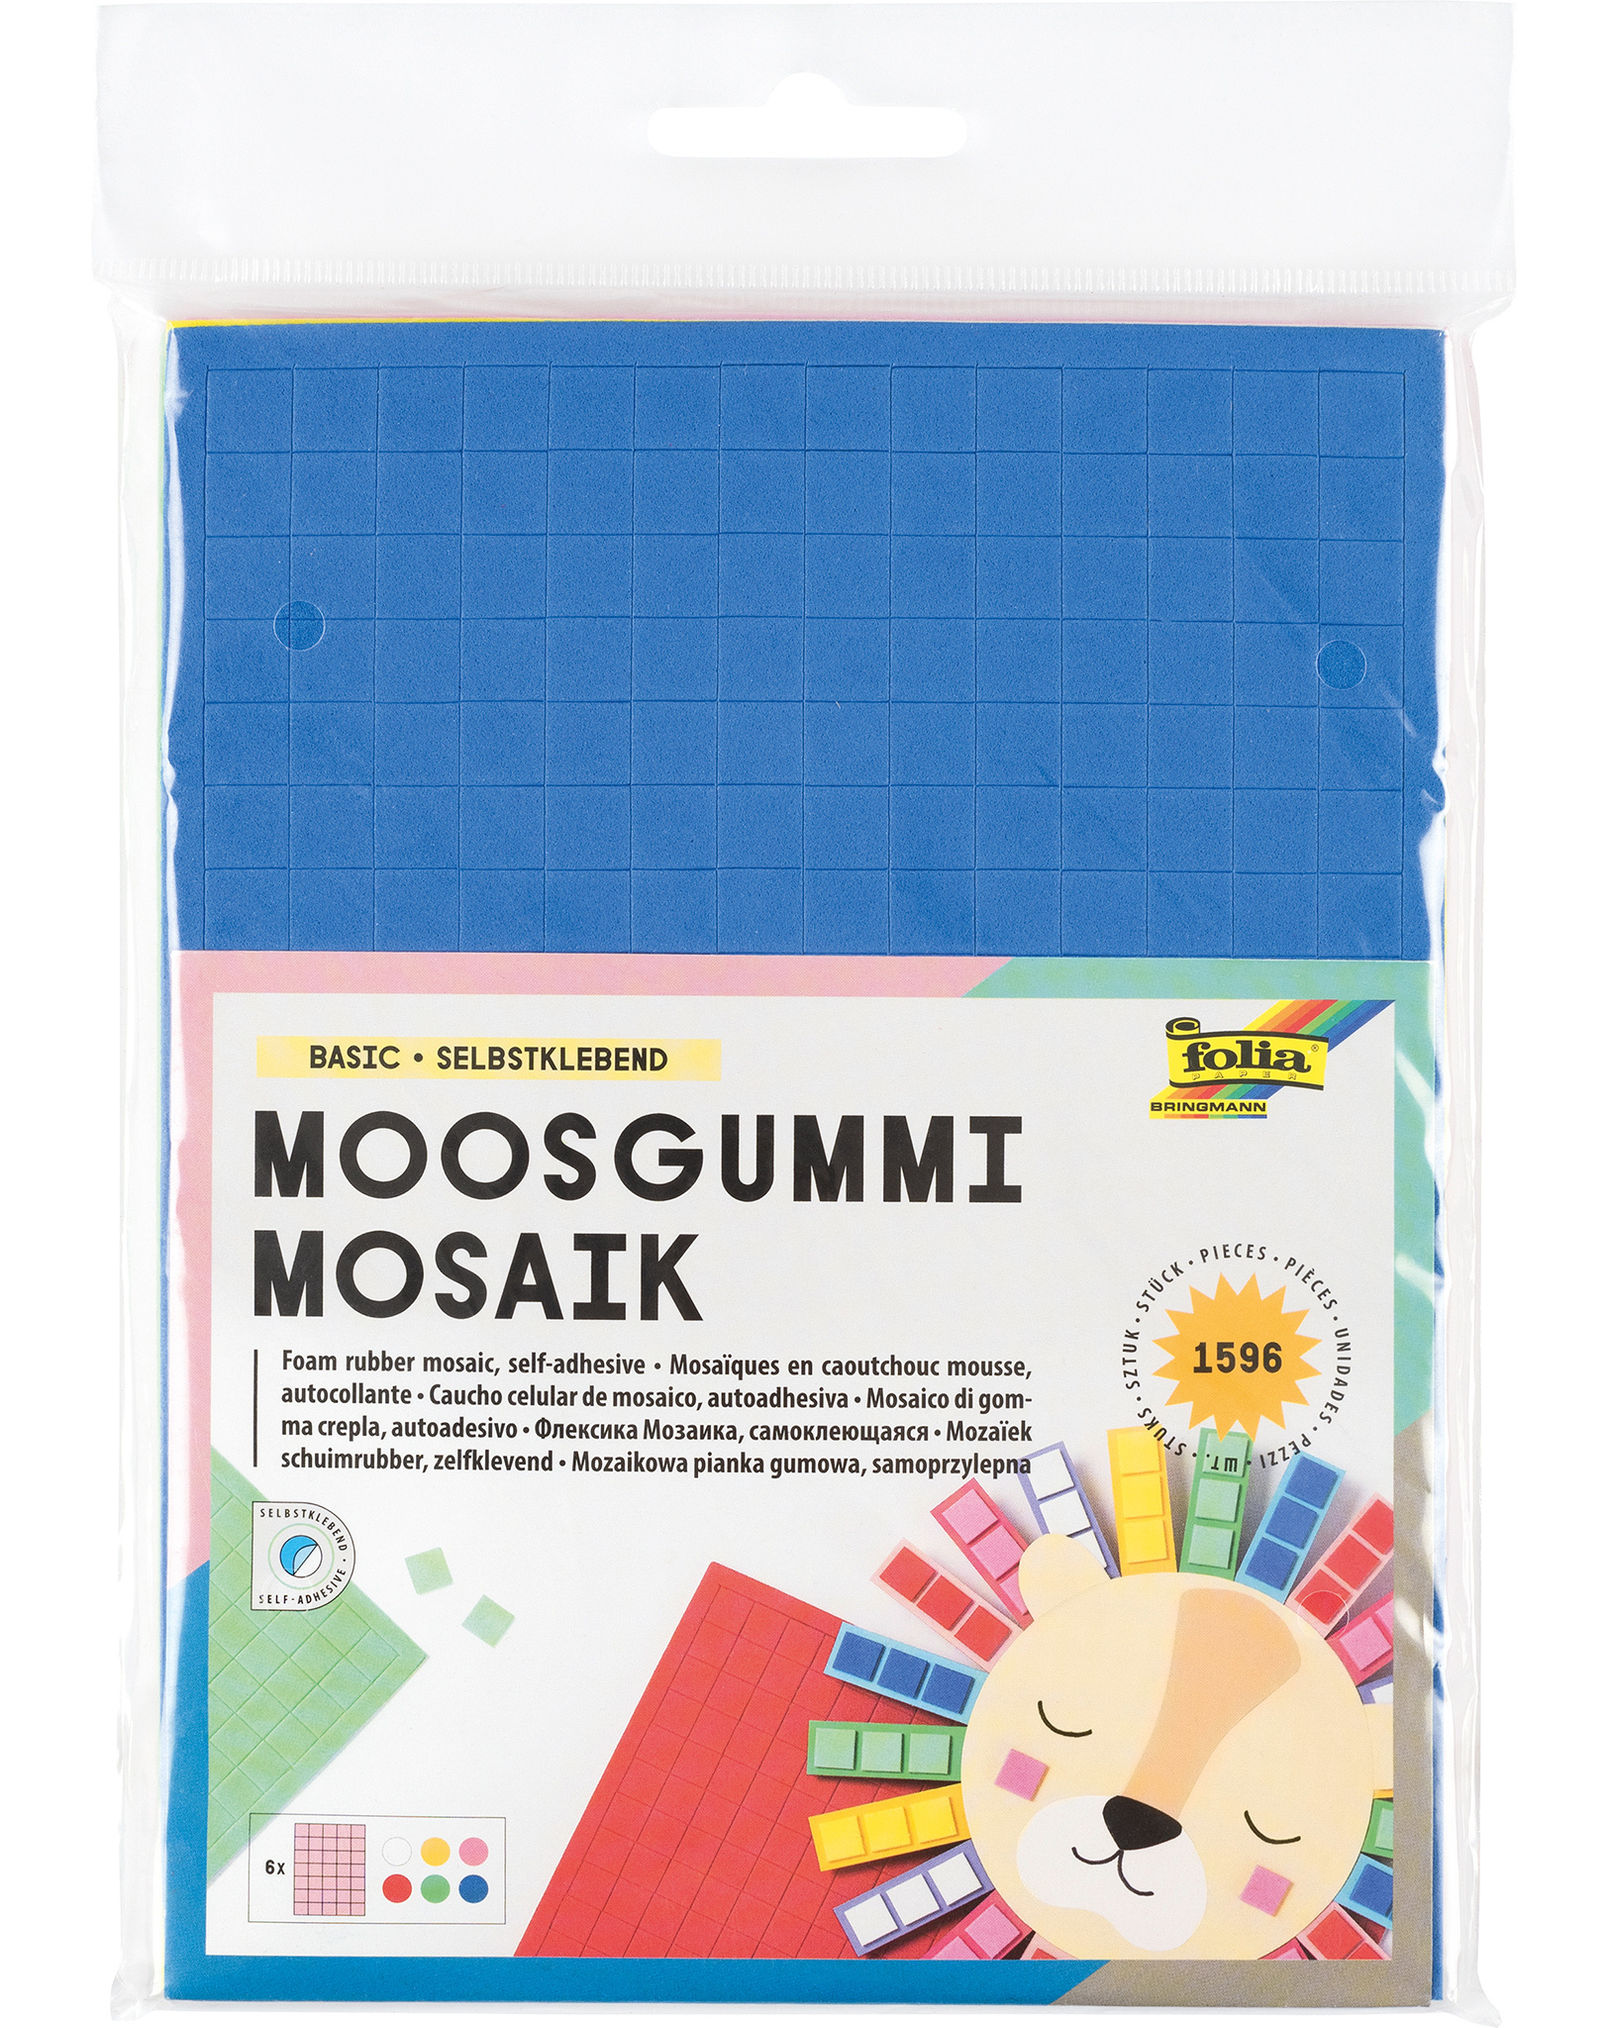 Moosgummi Mosaik BASIC in 6 Farben kaufen | tausendkind.de